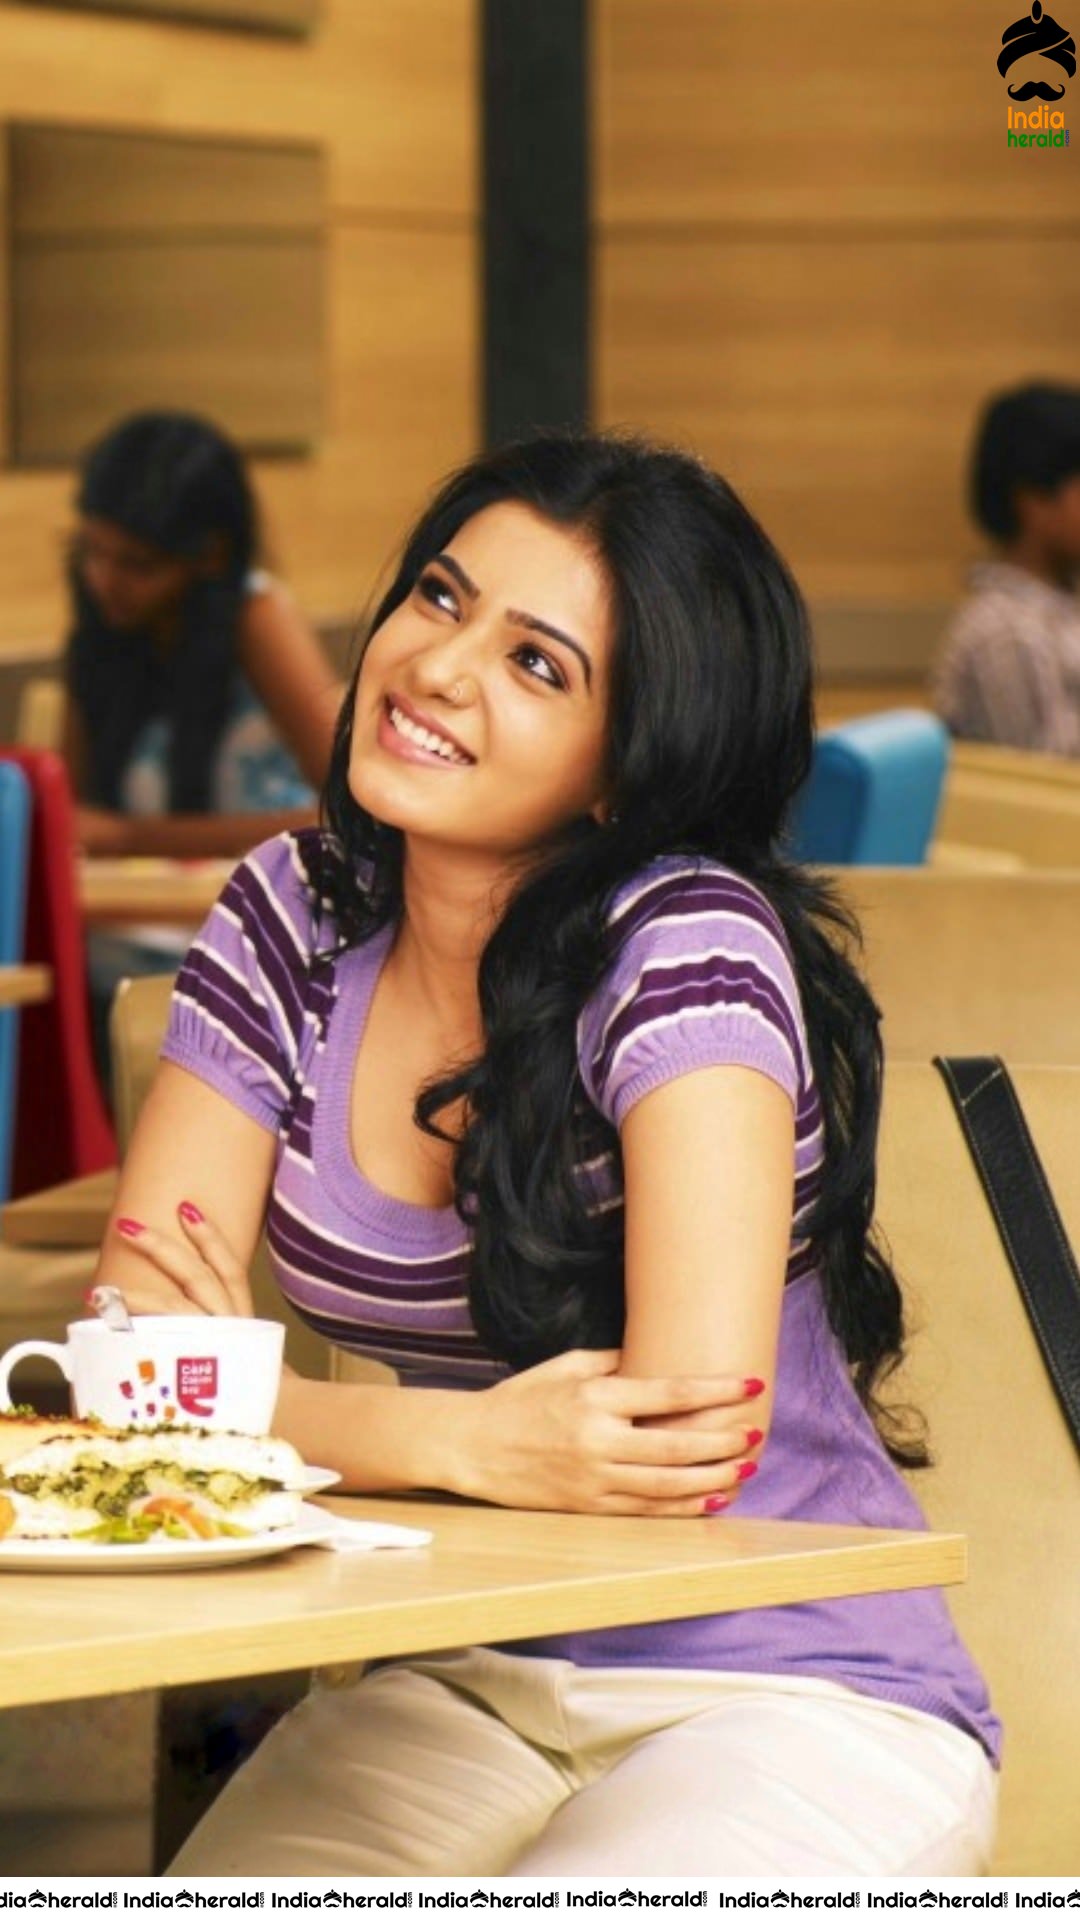 INDIA HERALD EXCLUSIVE Samantha Unseen Stills from Neethane En Ponvasantham Tamil Movie Set 2